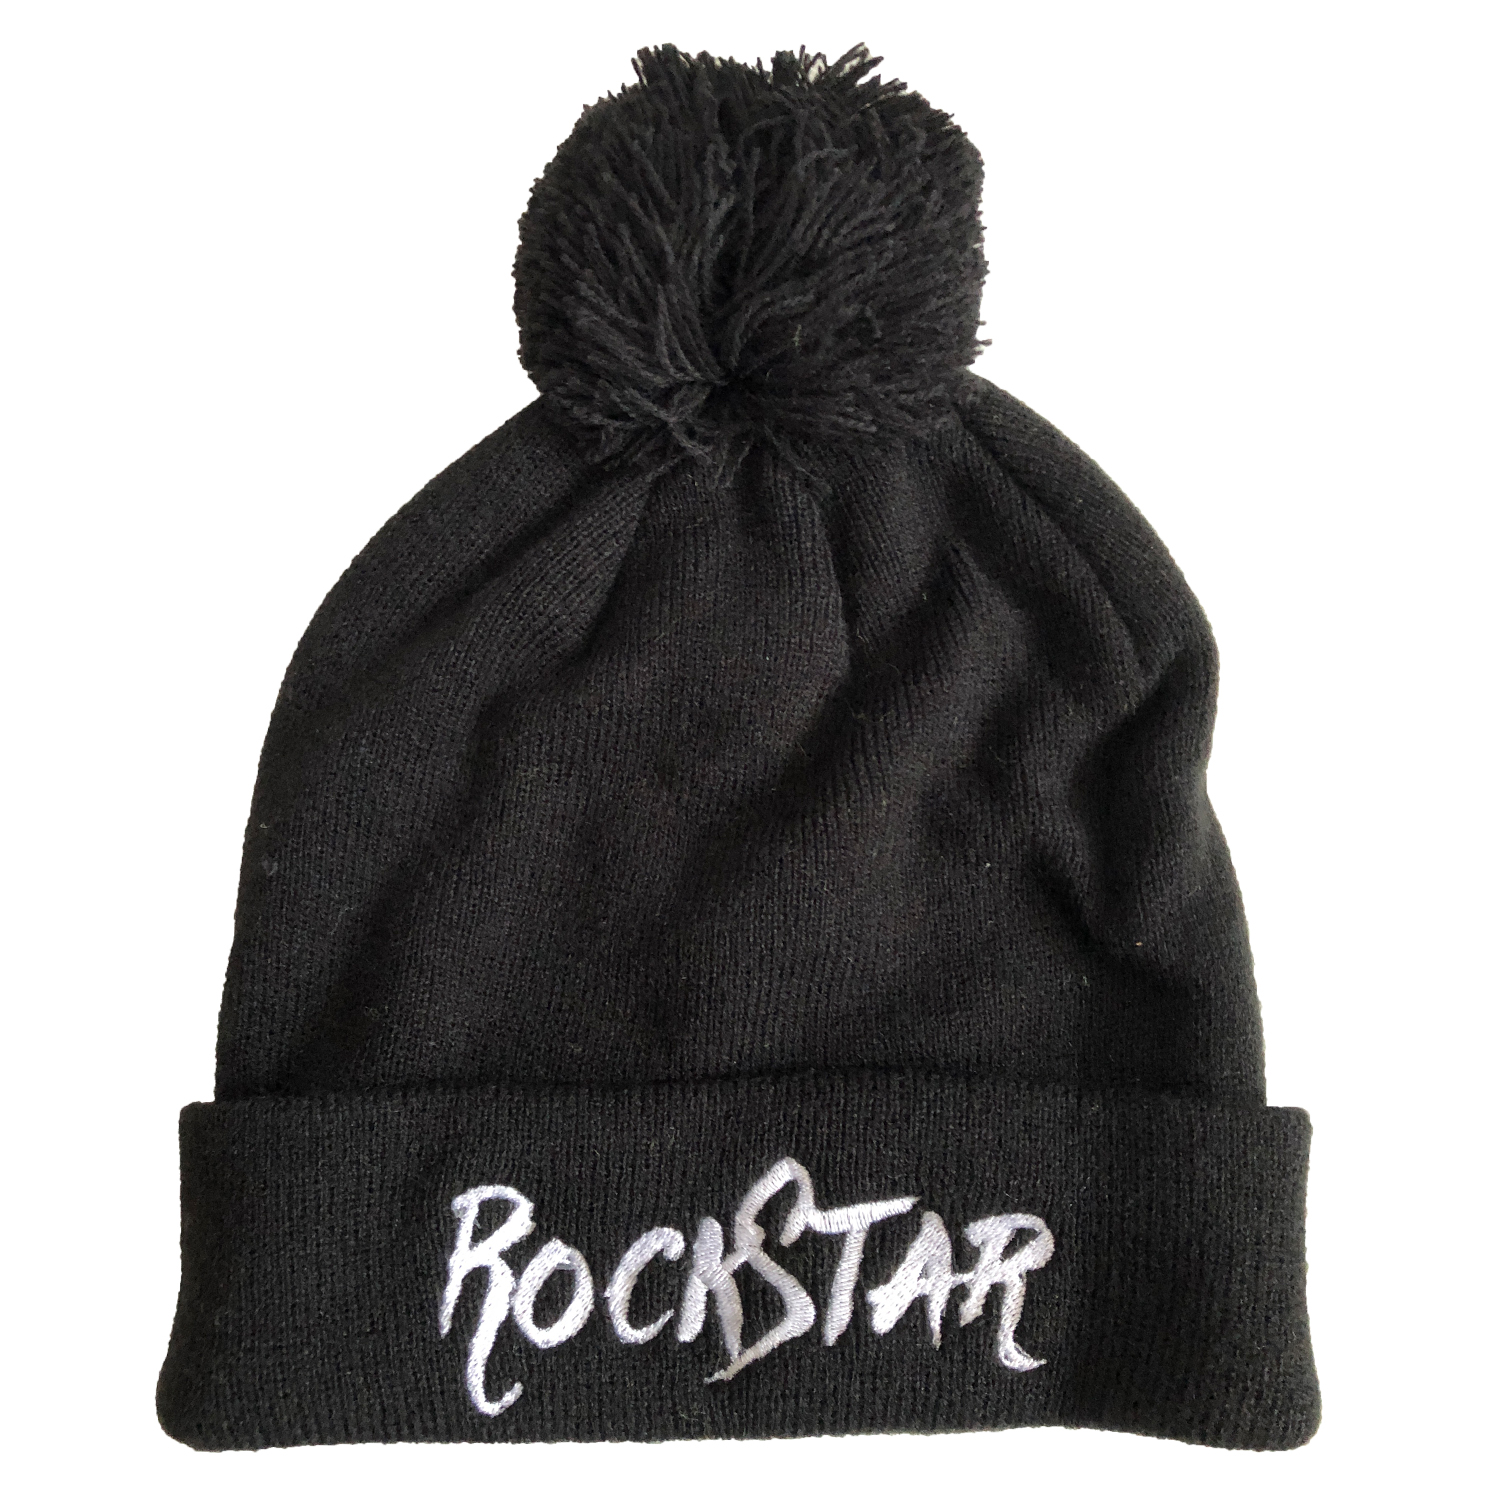 Beau Tyler - RockStar winter knit hat black front - maybe temp